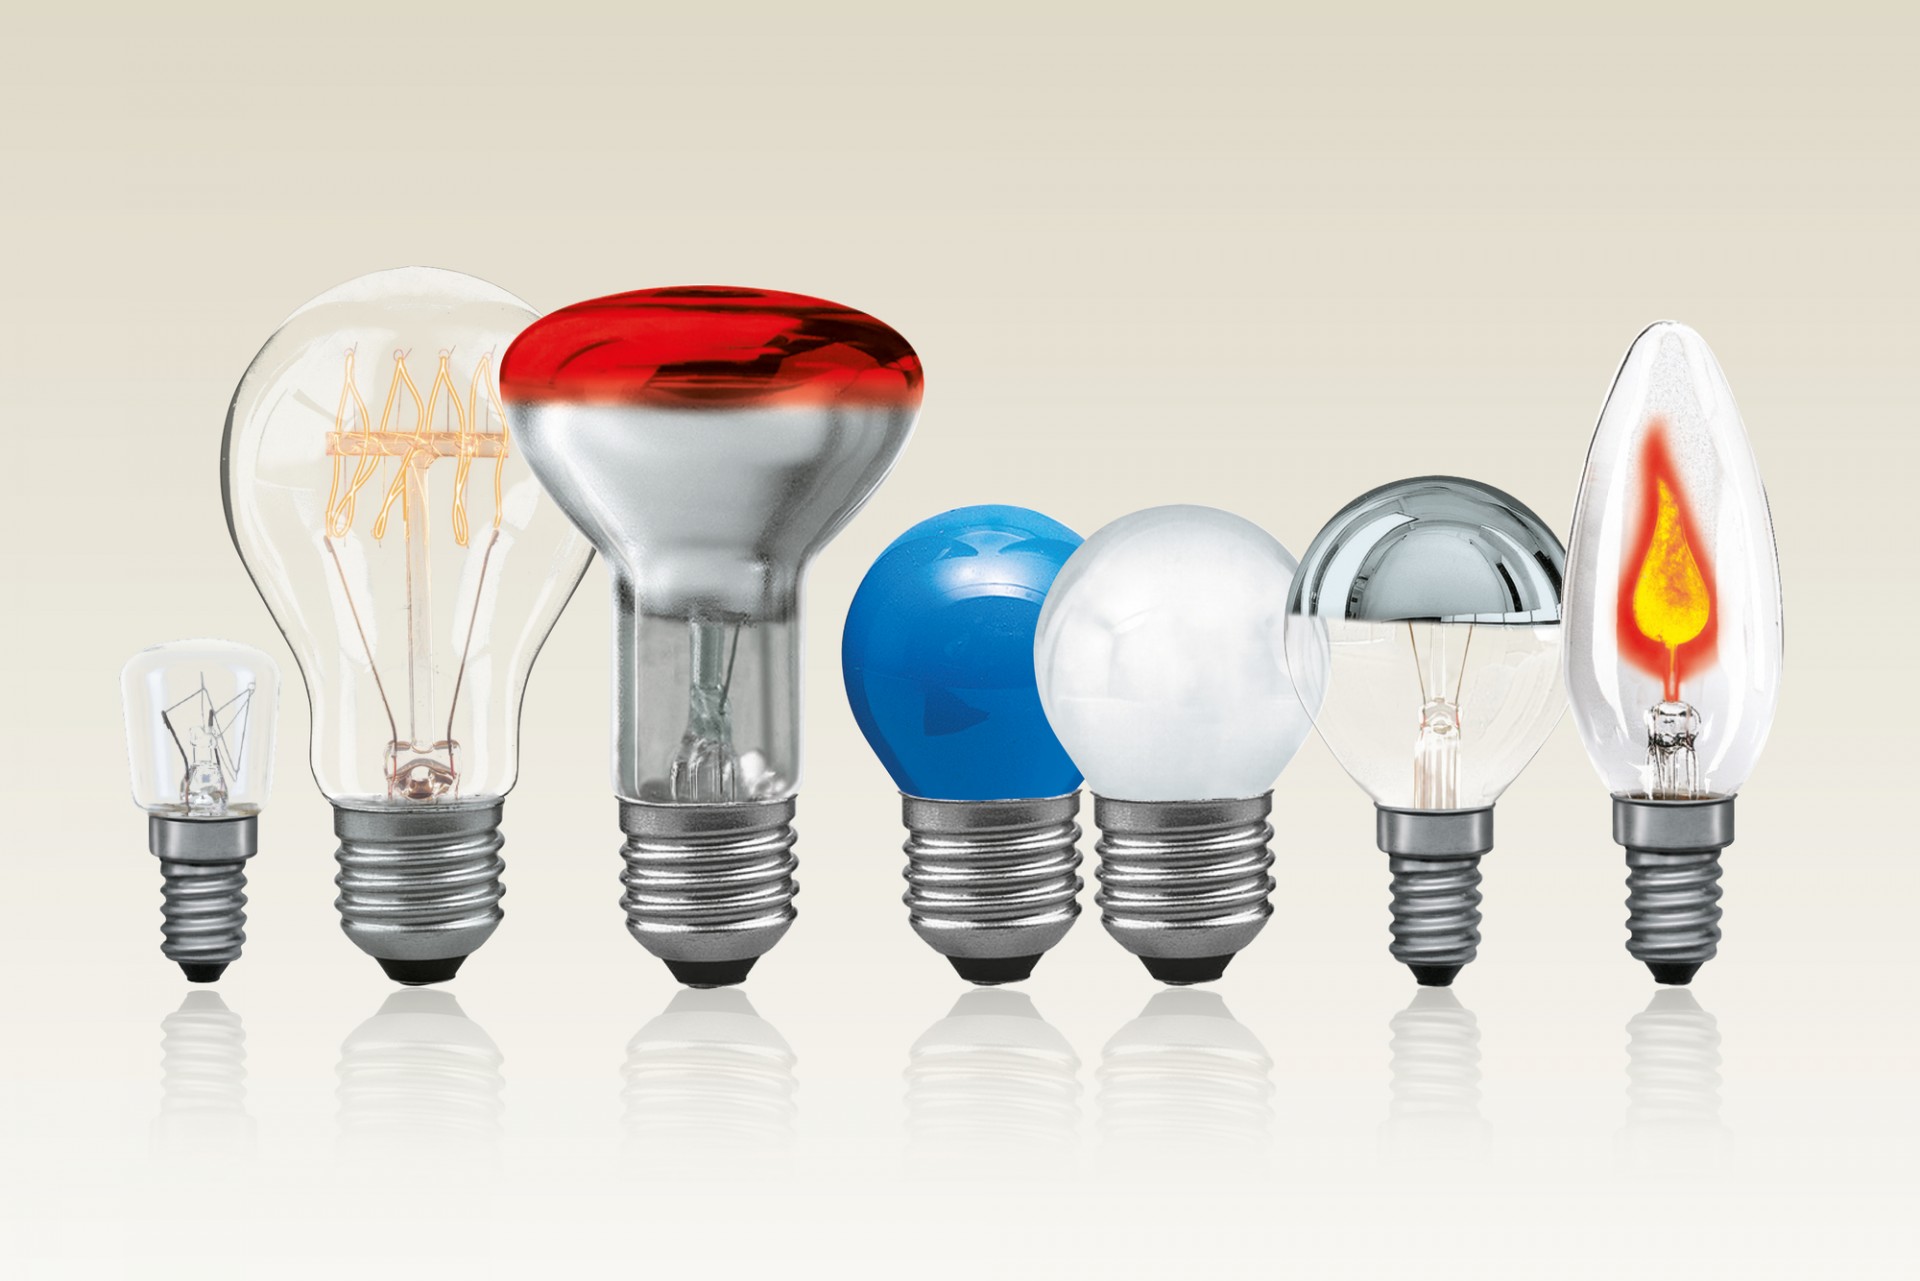 Разновидности ламп. Угол рассеивания разных ламп. Лампочки накаливания разновидности. Выбор источников света.